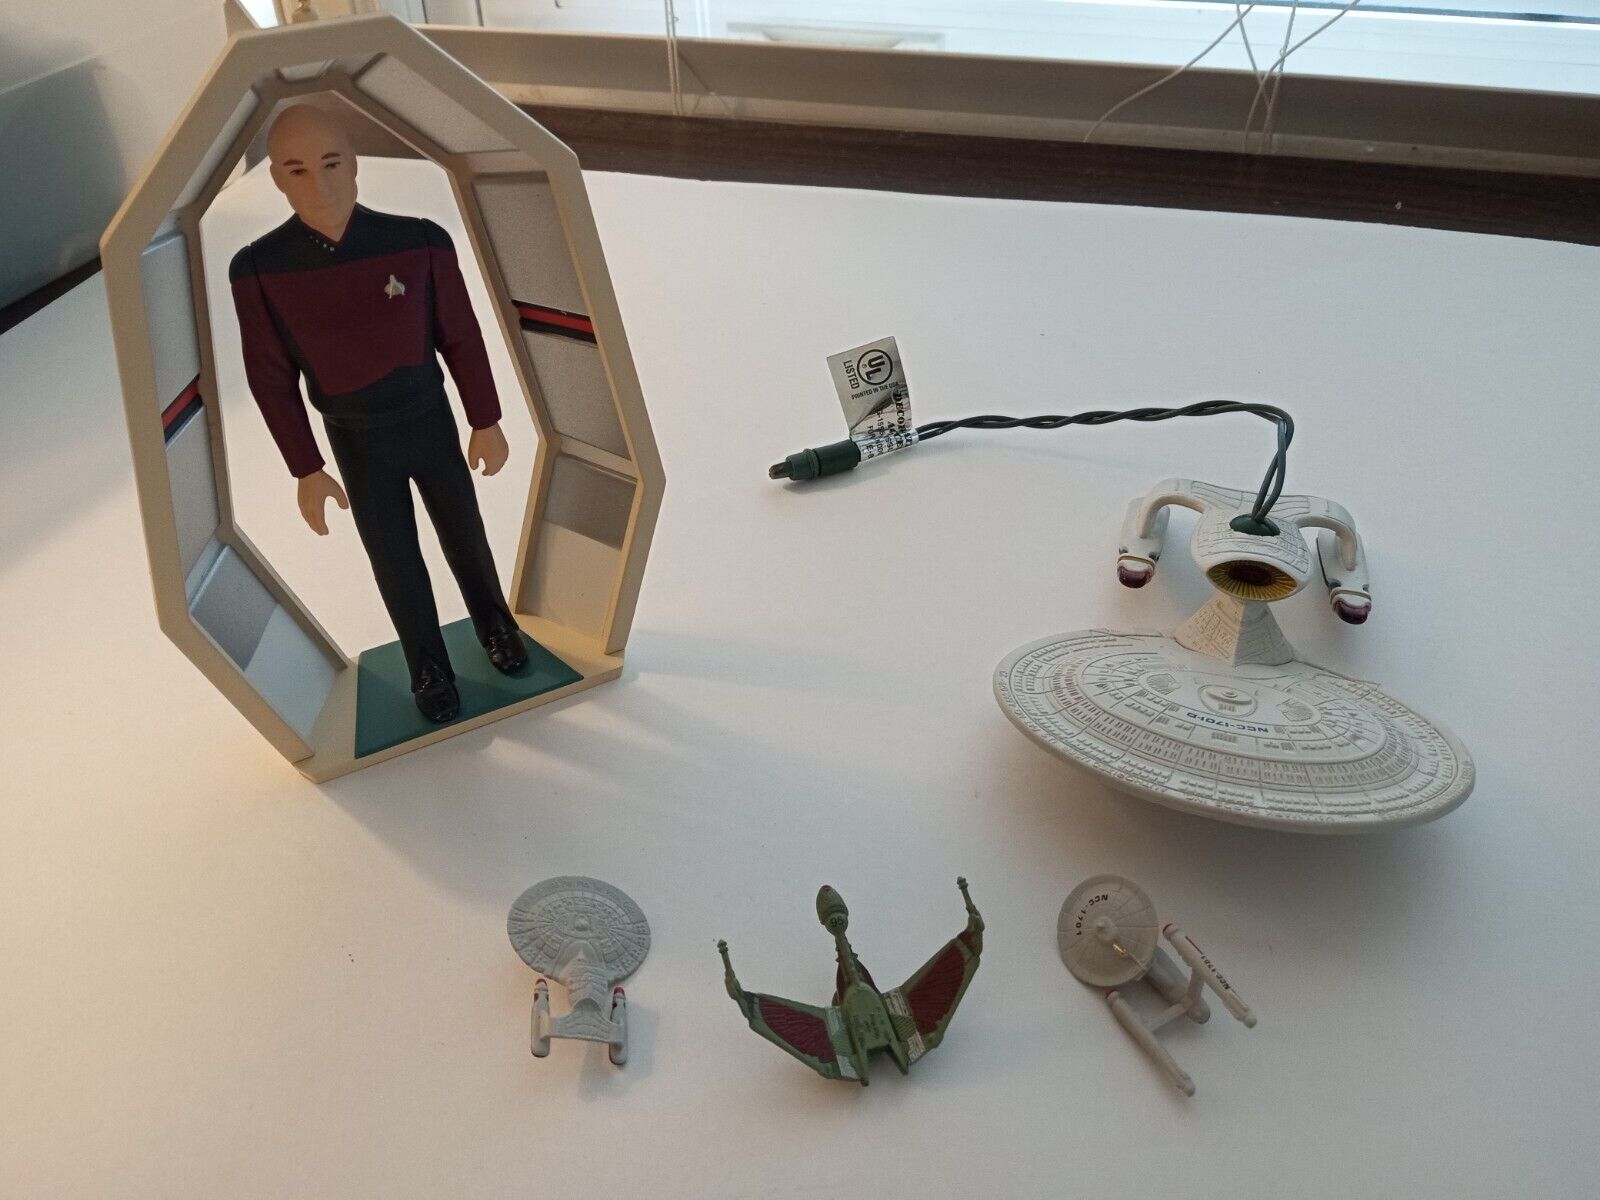 Lot of 3 Hallmark Star Trek Next Generation and Ships of Star Trek Ornaments